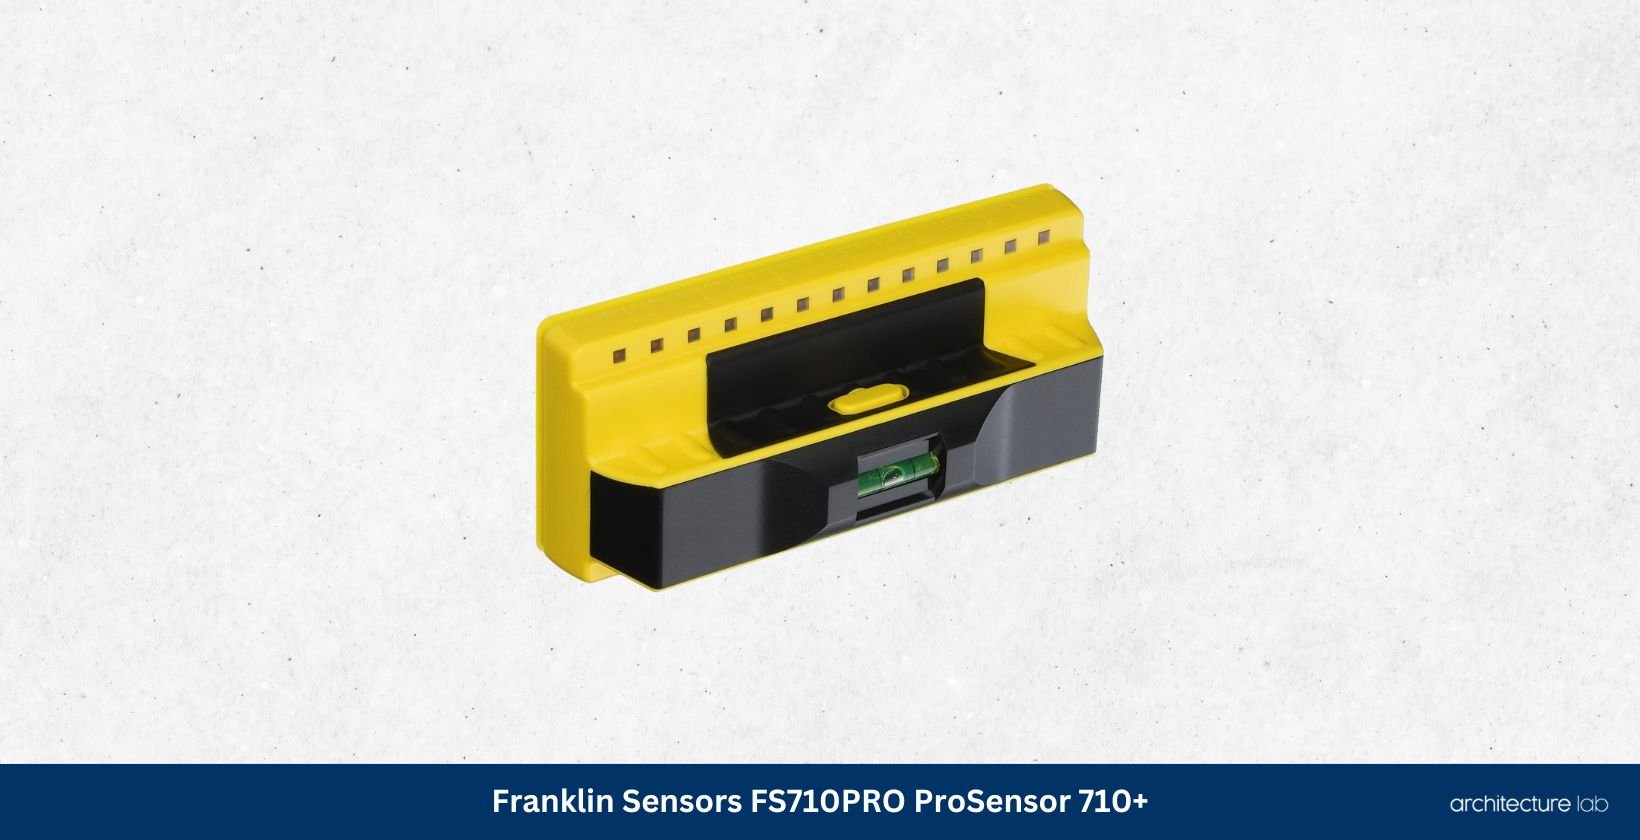 Franklin sensors fs710pro prosensor 710